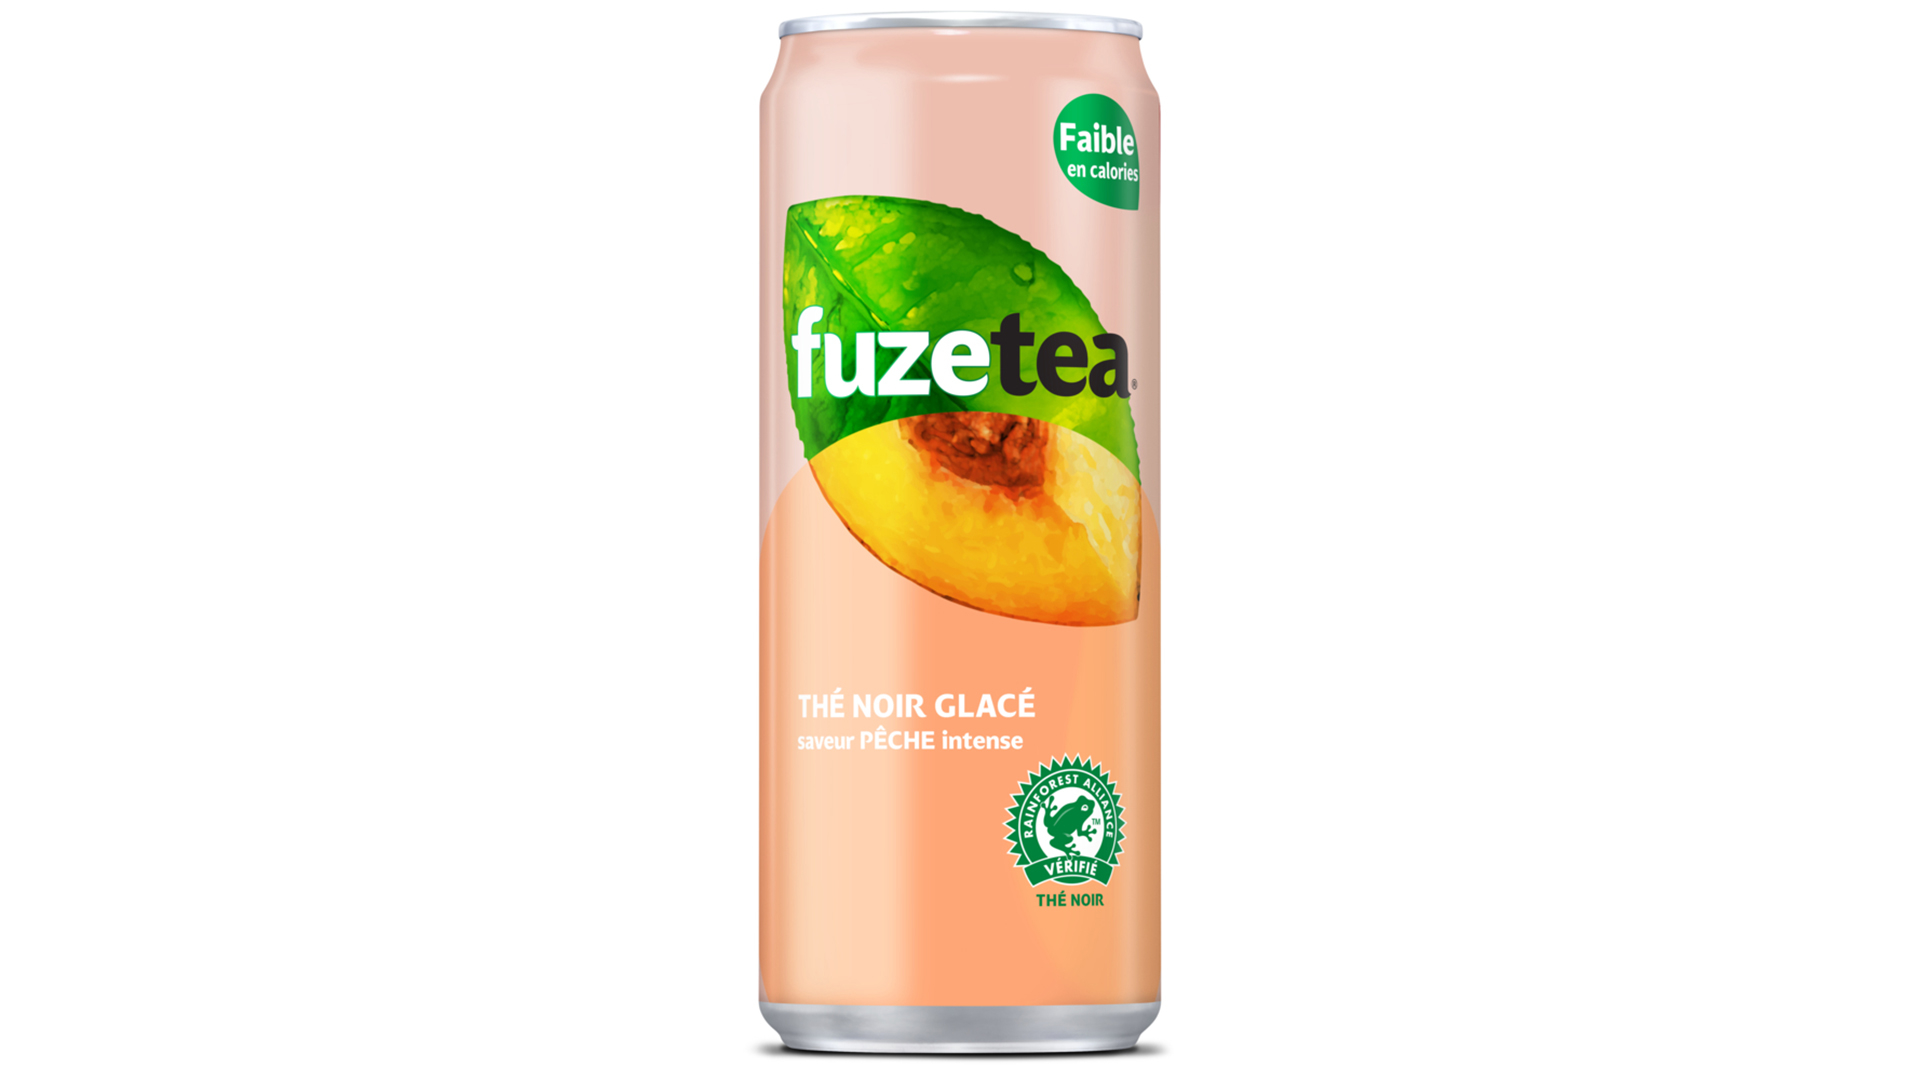 Fuze tea